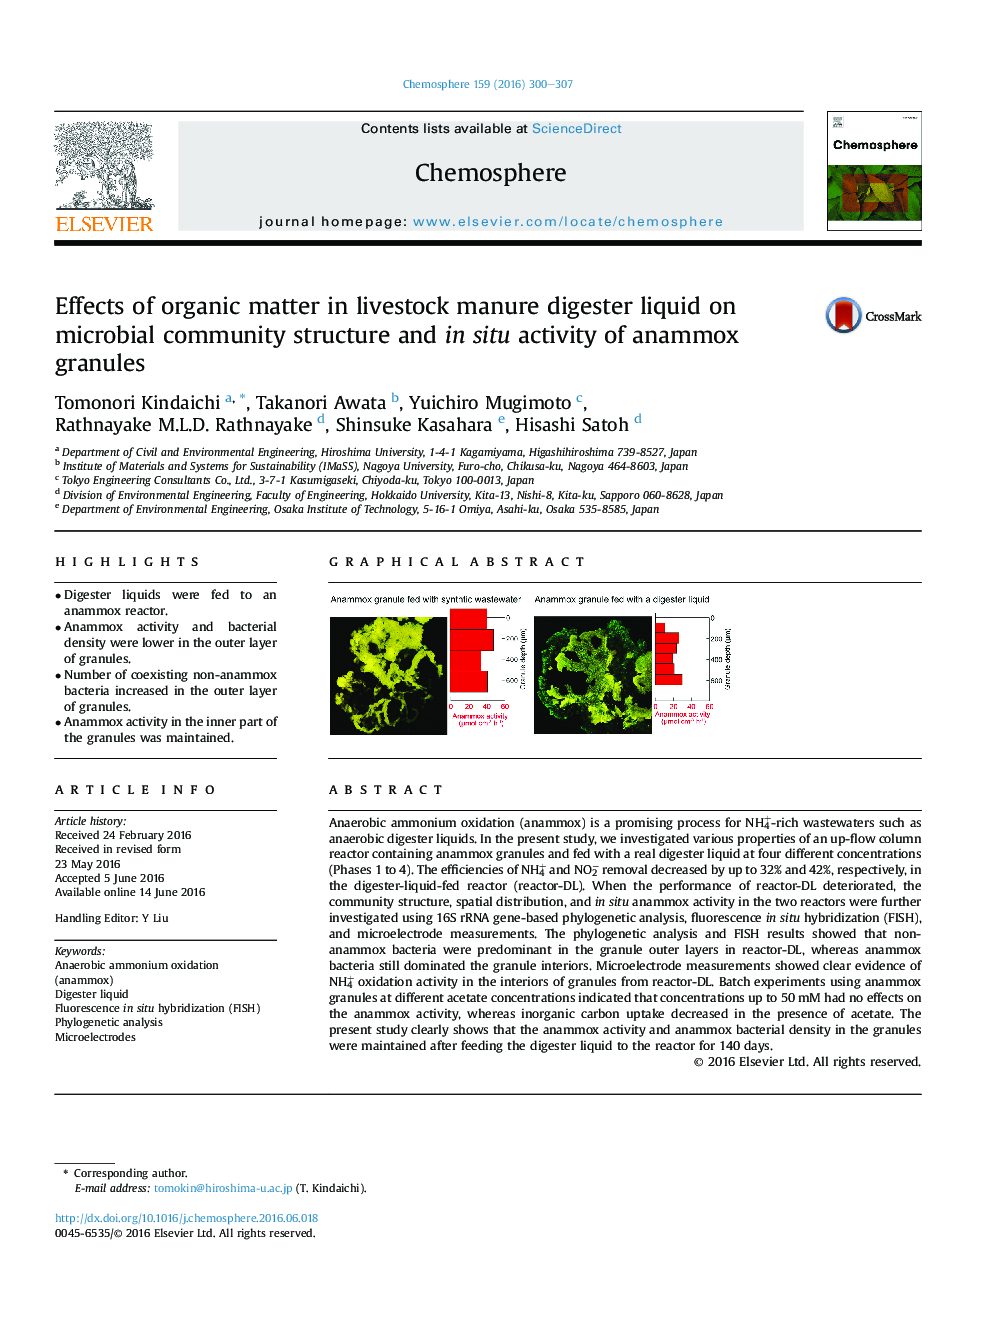 اثر مواد آلی در مایع کودی مزارع بر ساختار جامعه میکروبی و فعالیت ناحیه گرانول های آناموکس 